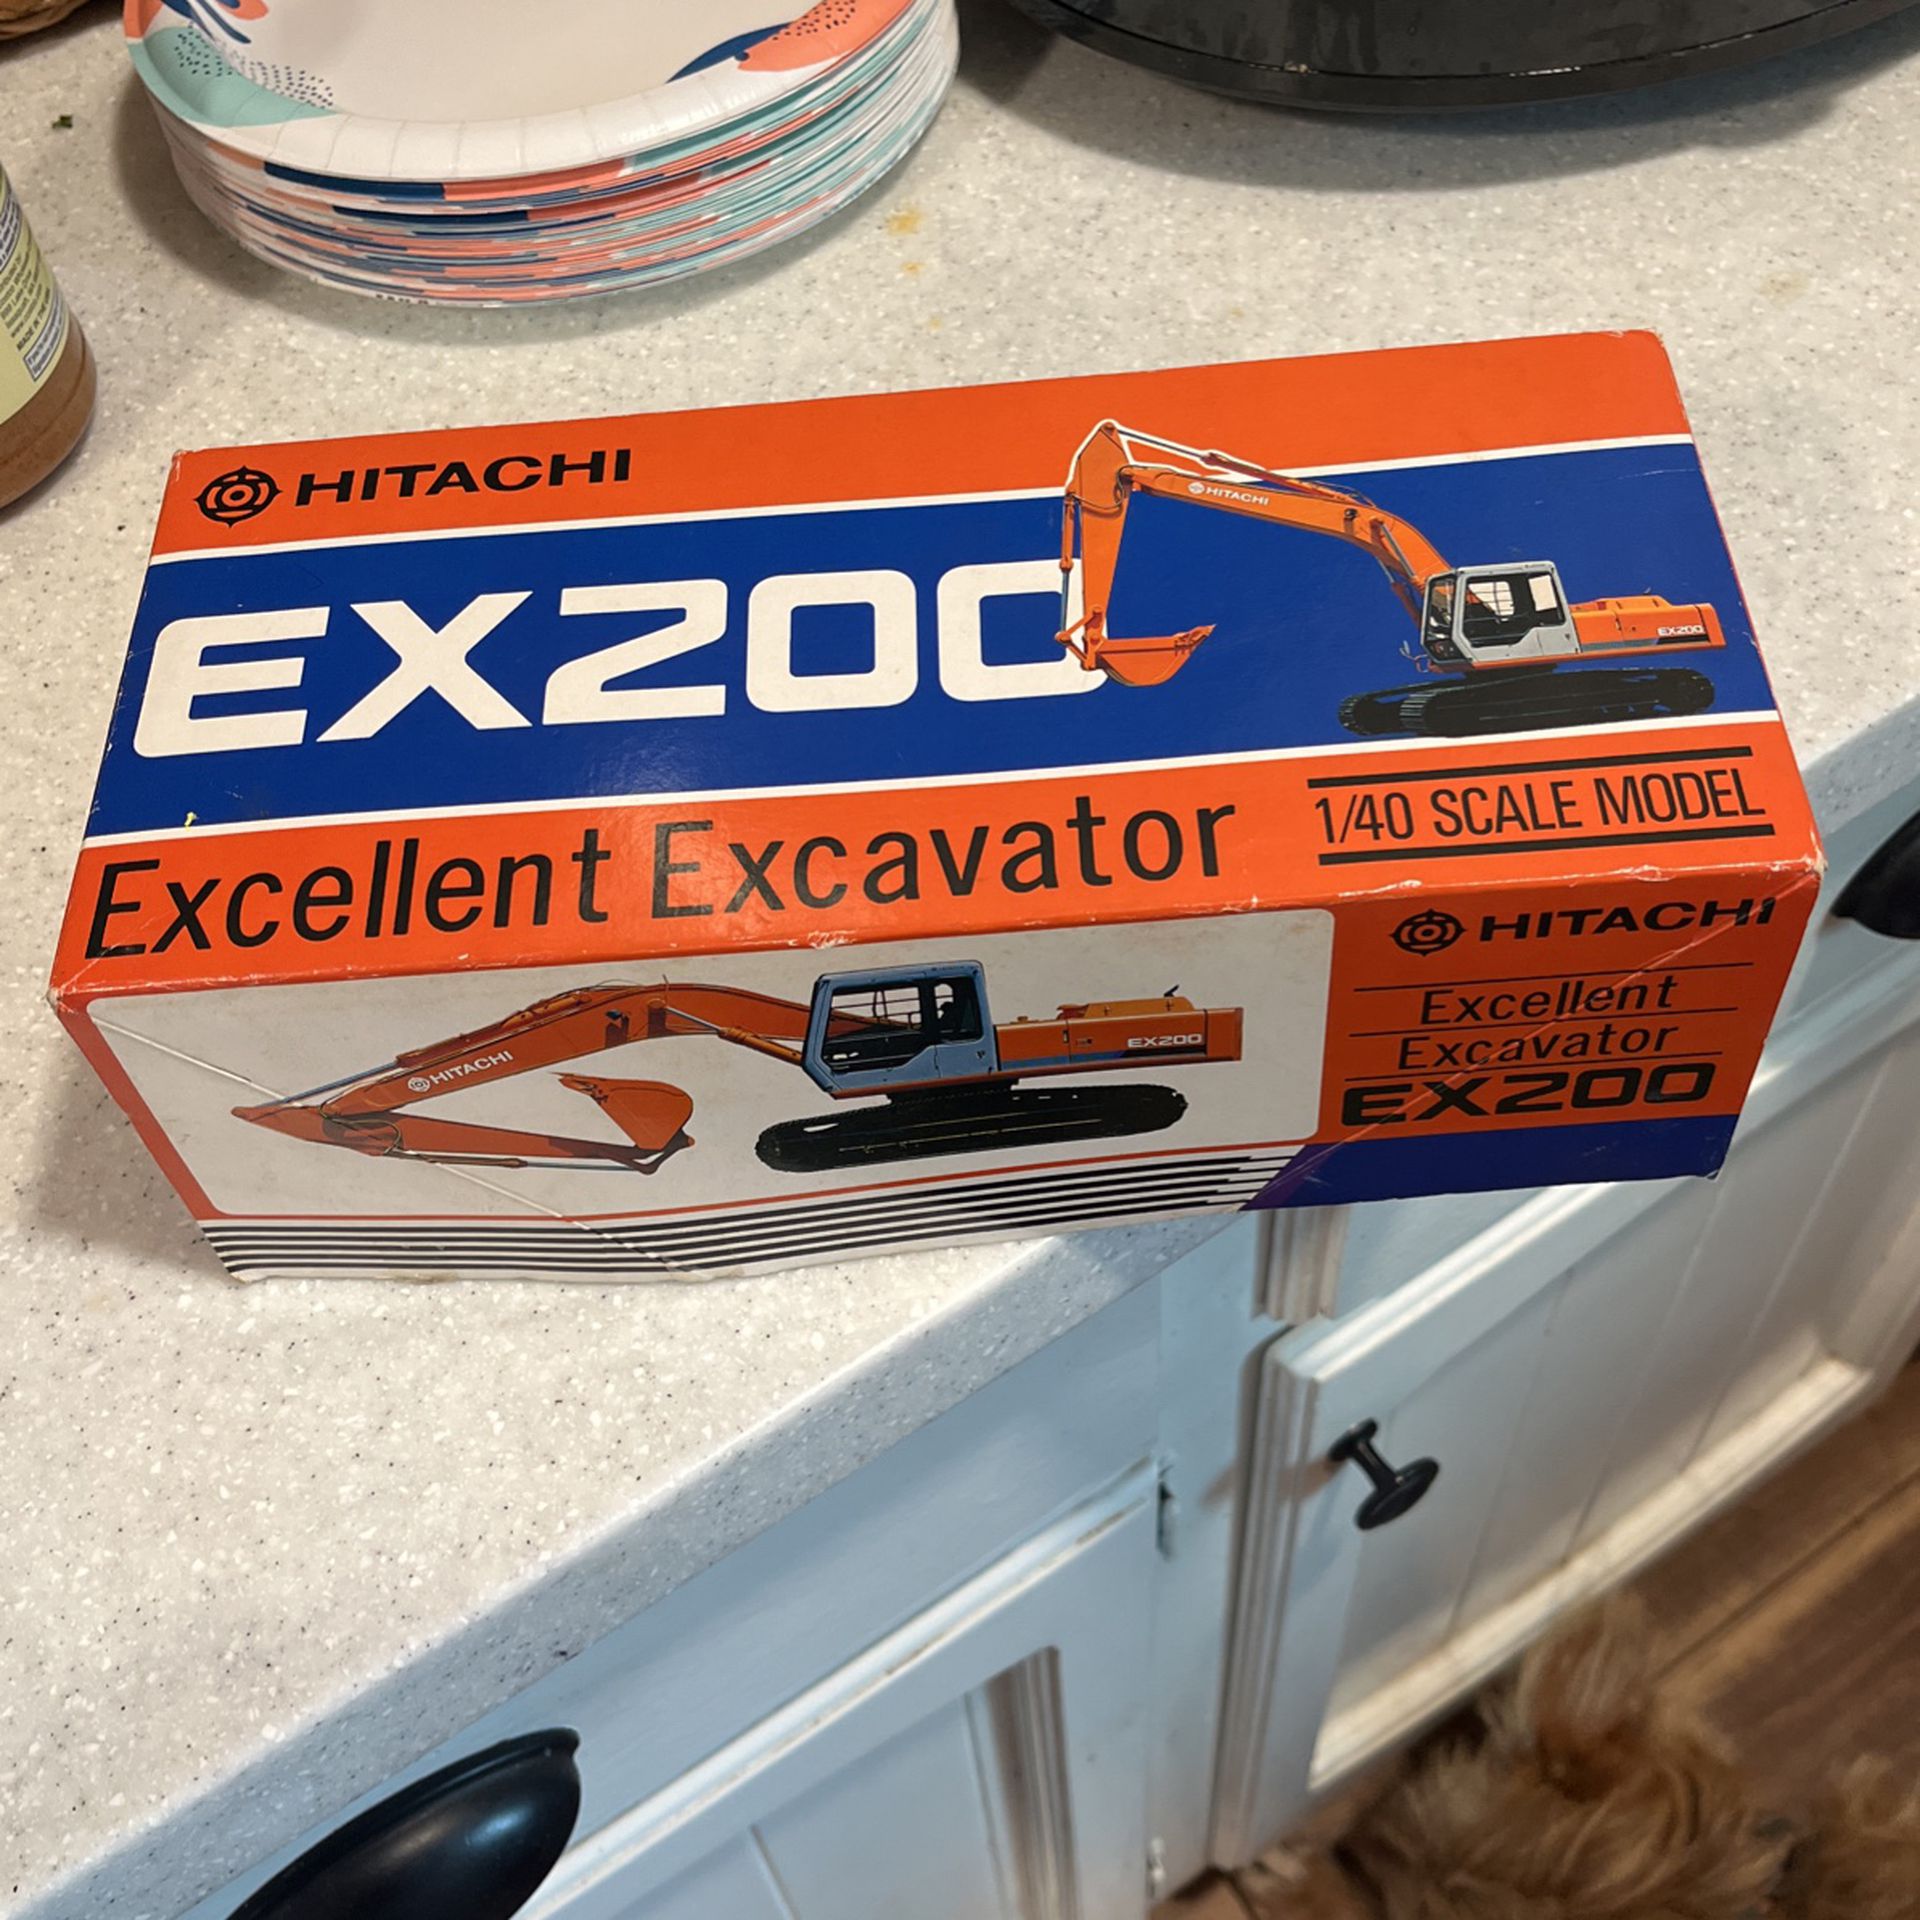 Hitachi Ex200 Excellent Excavator Model